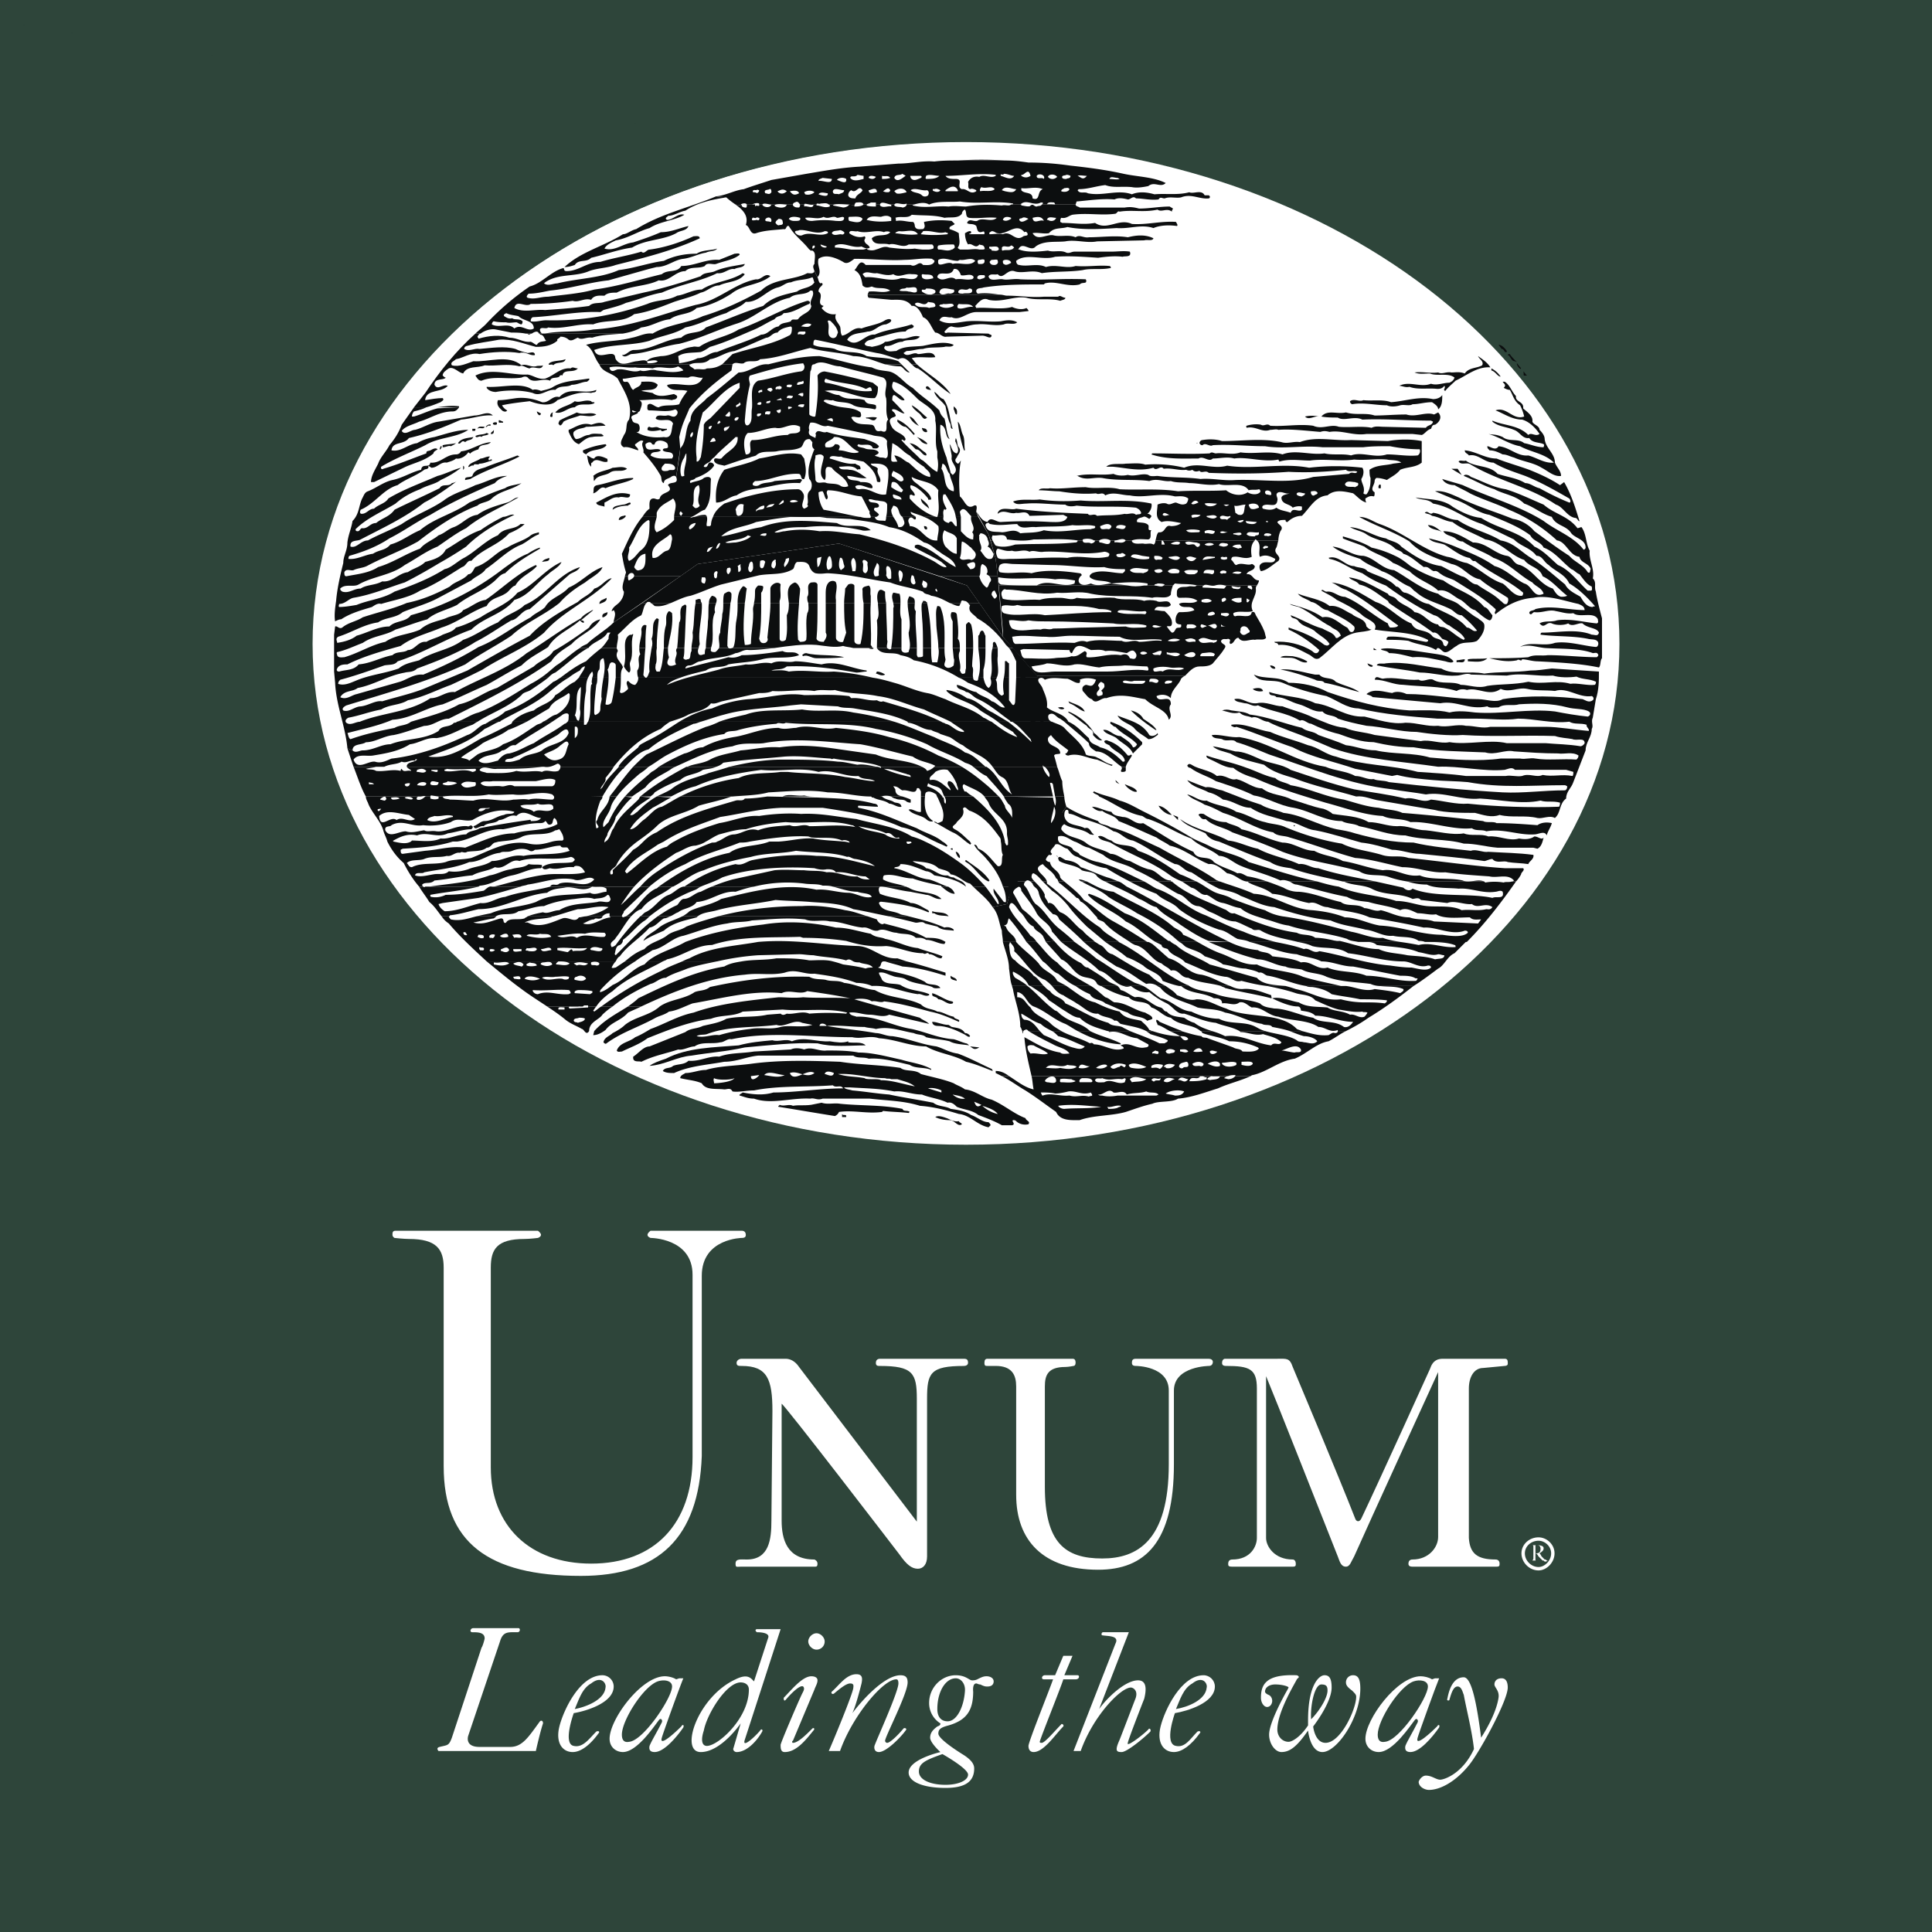 Unum Group logo colors